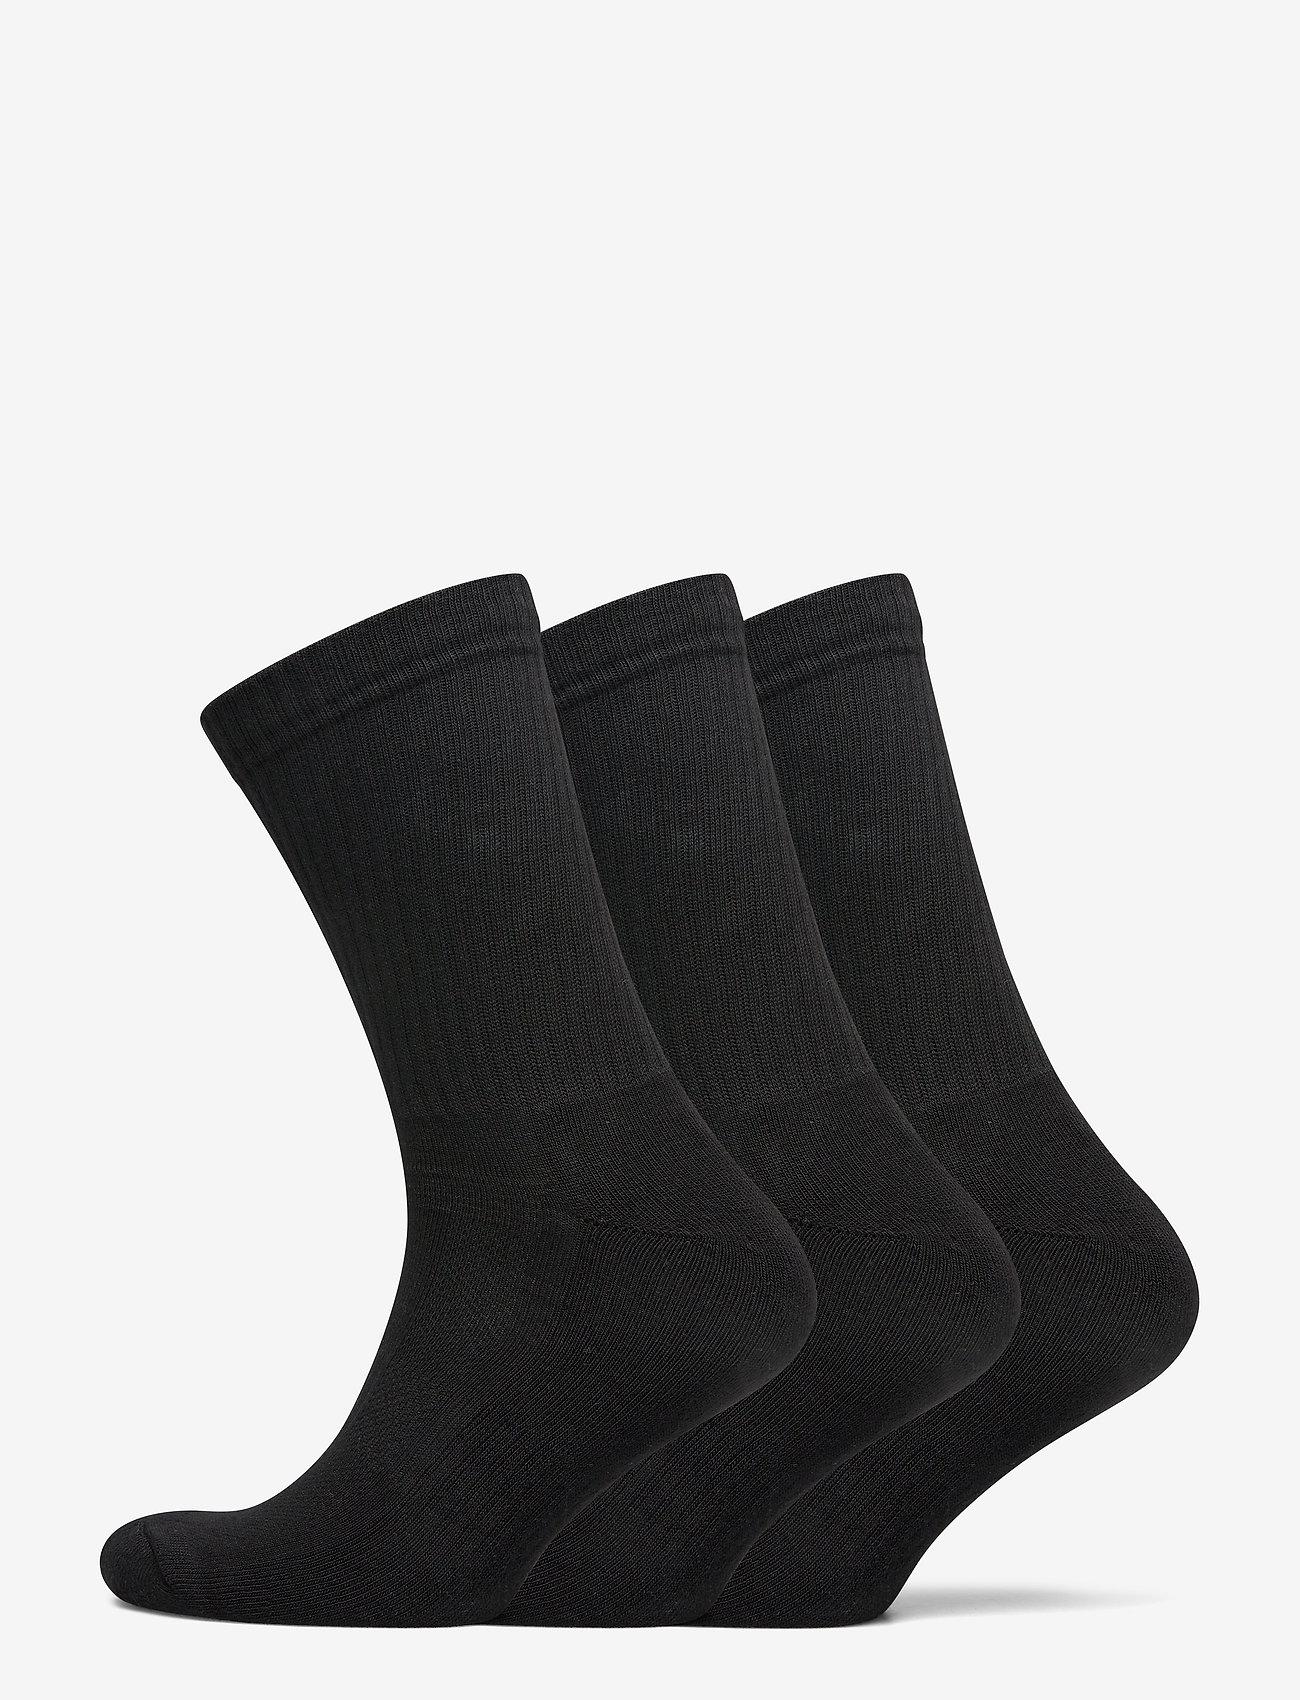 JBS - JBS socks terry sole, 3-pack - madalaimad hinnad - svart - 0